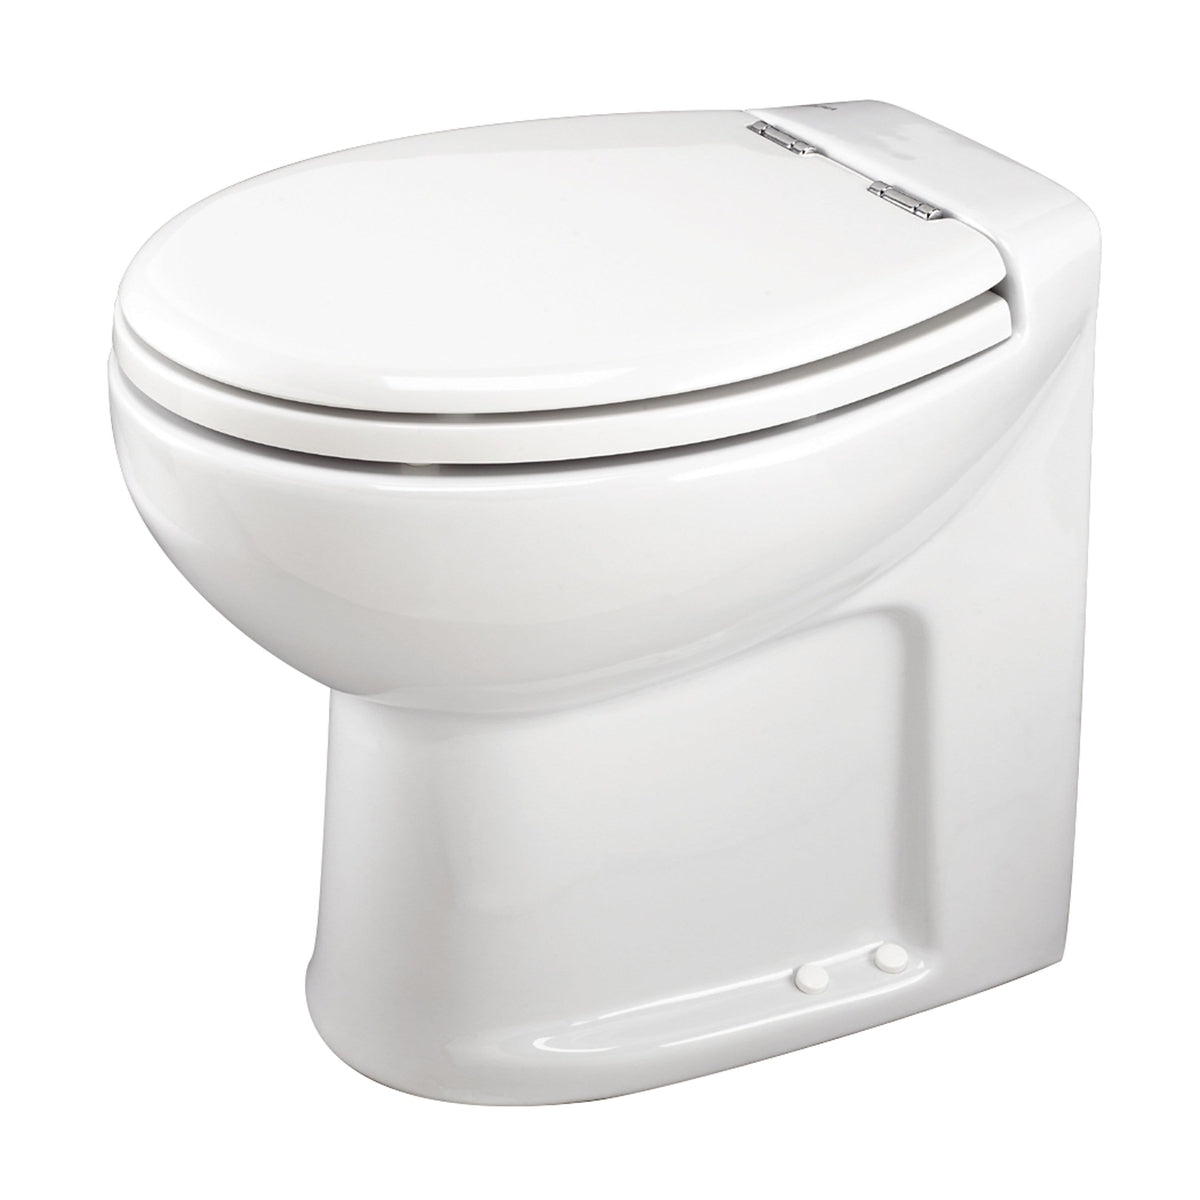 Thetford Not Qualified for Free Shipping Thetford Tecma Silence Plus 1 Mode 12v RV Toilet White #38046